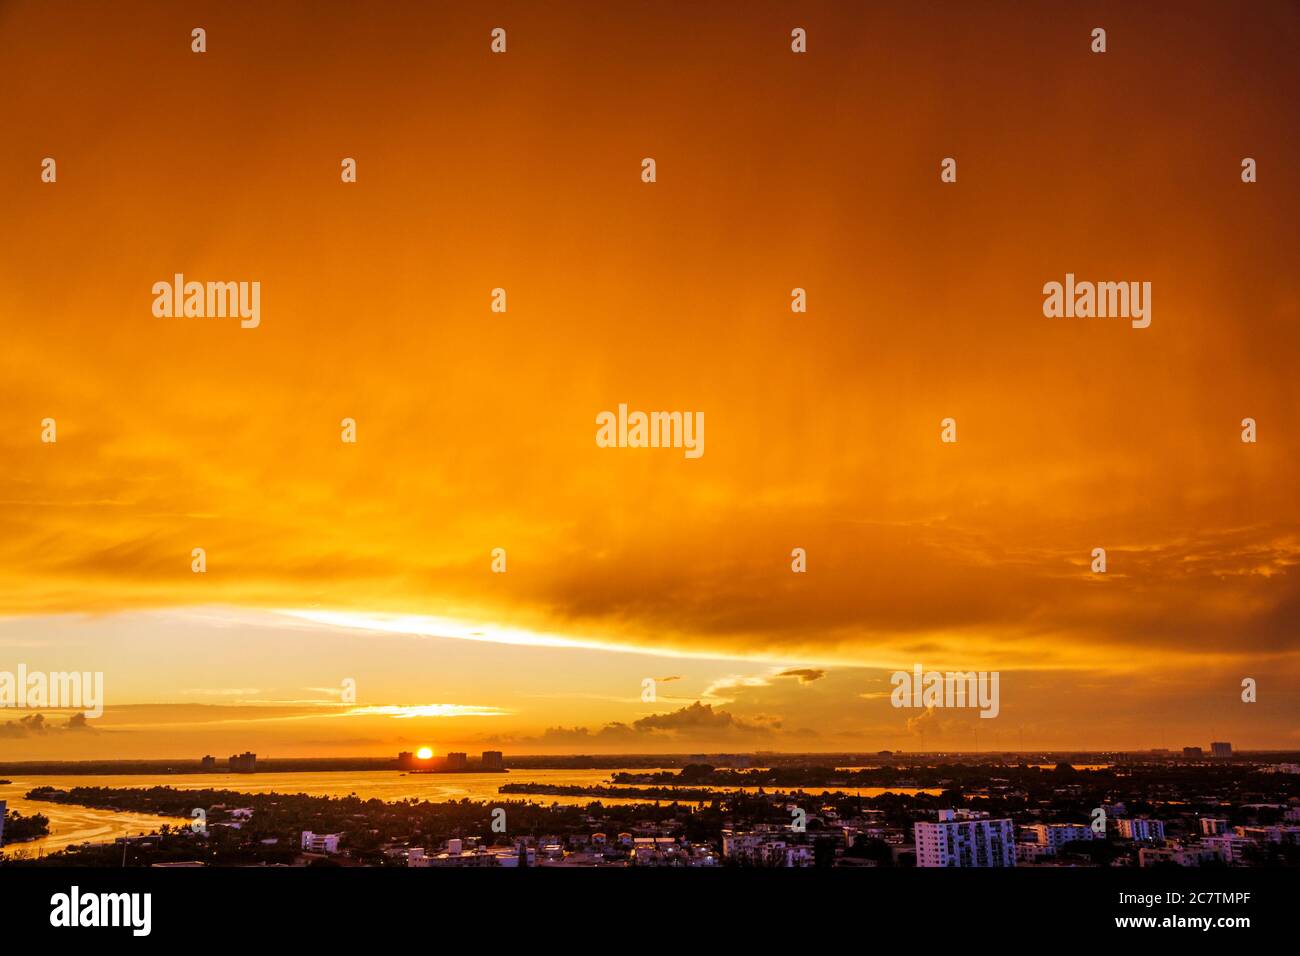 Miami Beach Florida, Biscayne Bay Water, skyline della città, tramonto, tempesta fronte nuvole, arancione colore cielo, concetto cambiamento climatico globale riscaldamento clima cri Foto Stock